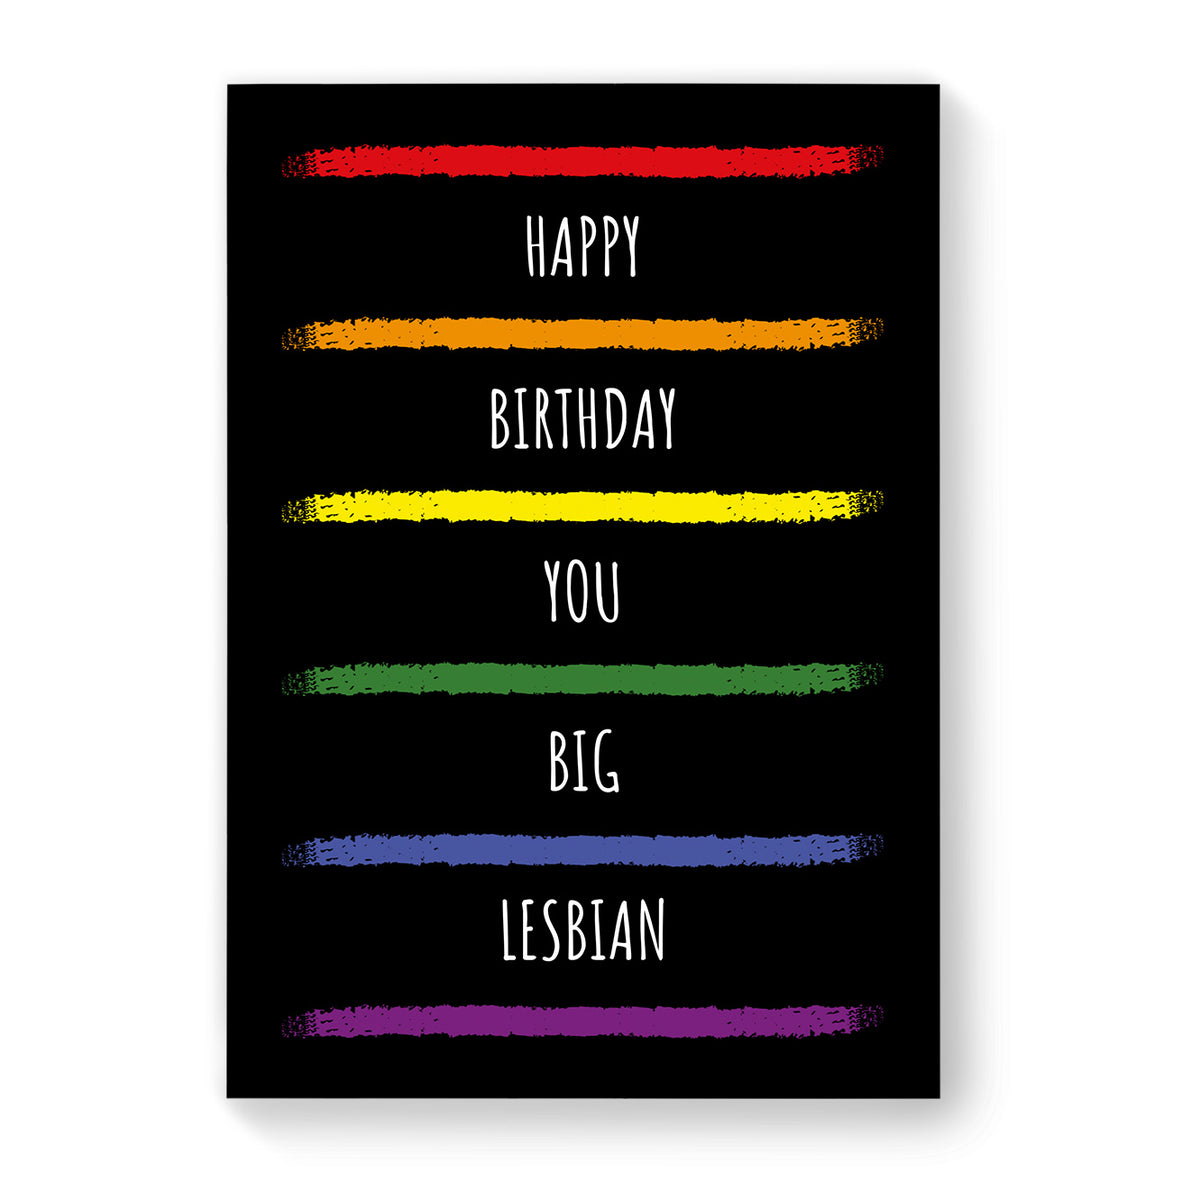 Happy Birthday You Big Lesbian - Lesbian Birthday Card - Black Rainbow Stripes | Gift